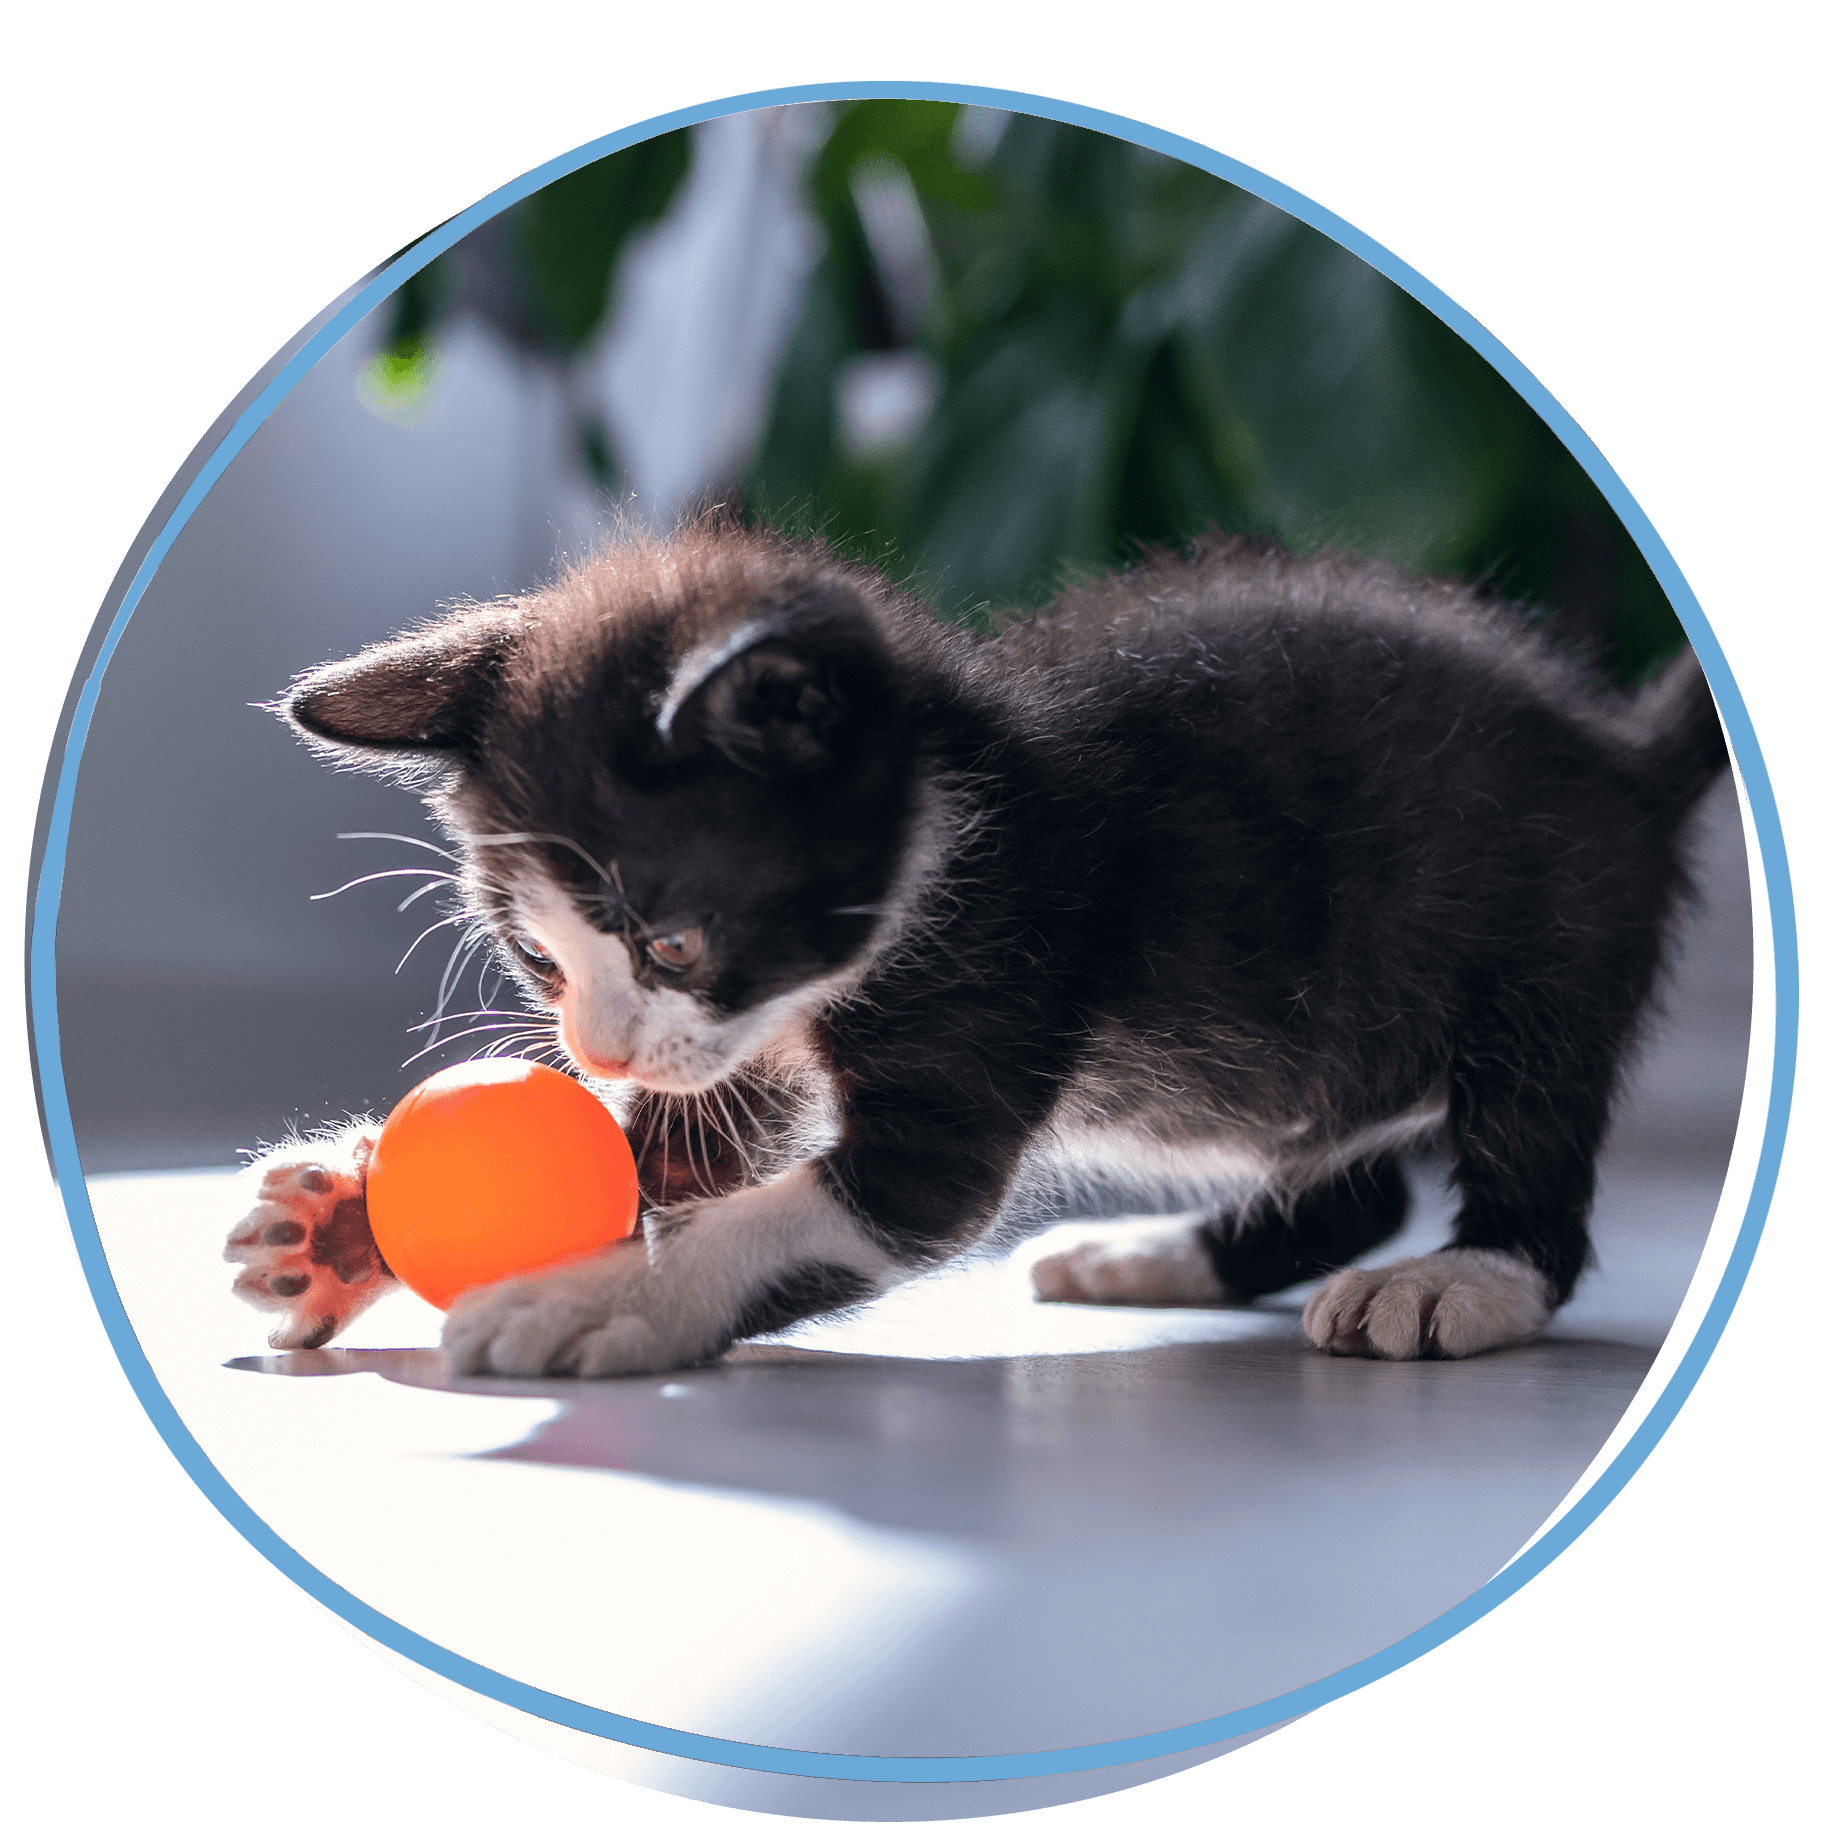 kitten playing with orange ball